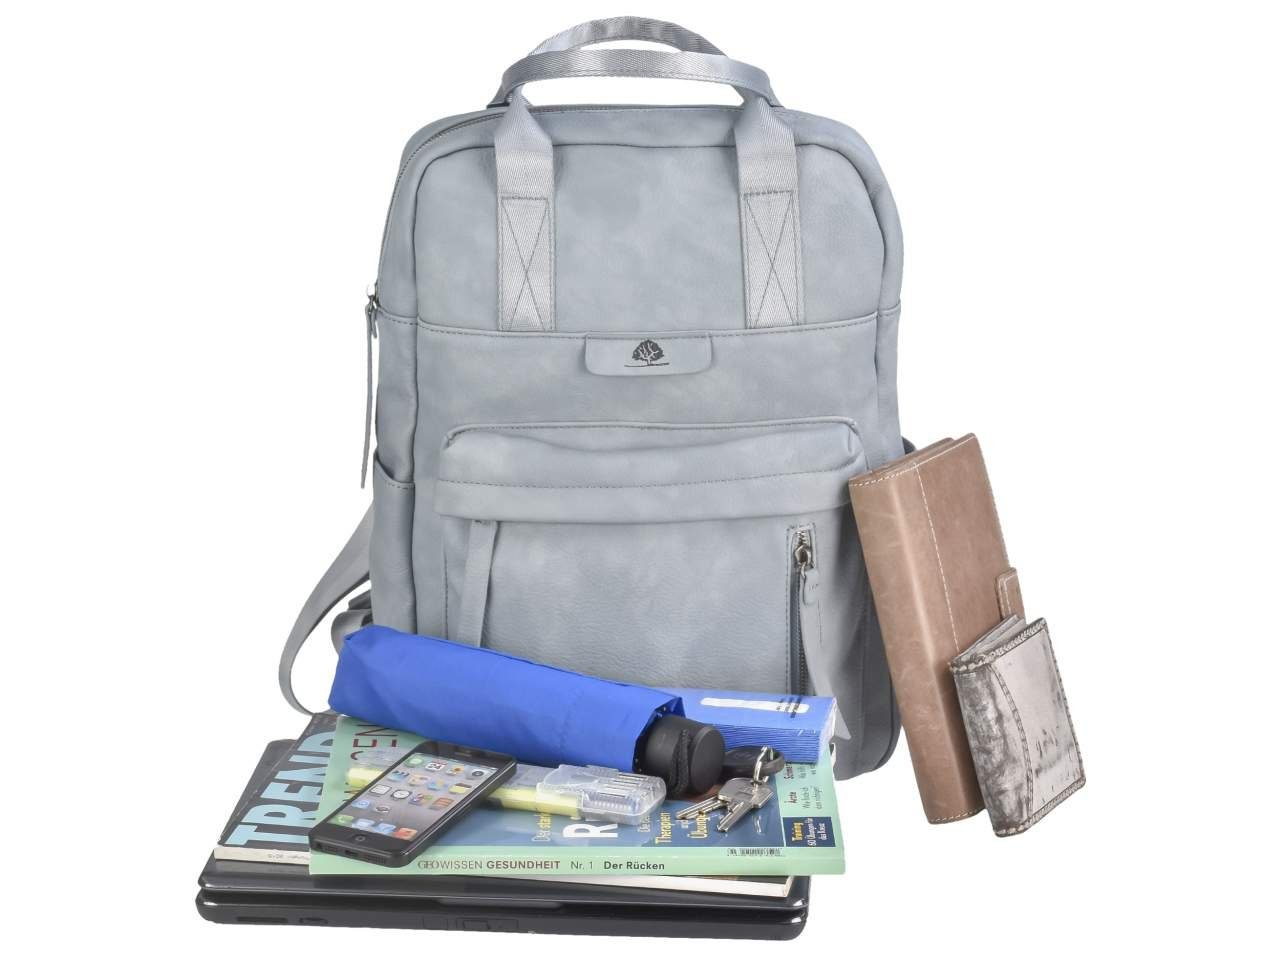 Greenburry Notebookfach, Damenrucksack Tagesrucksack, ice TONI 30x40cm Daypack mit Dasch, Mad'l Freizeitrucksack